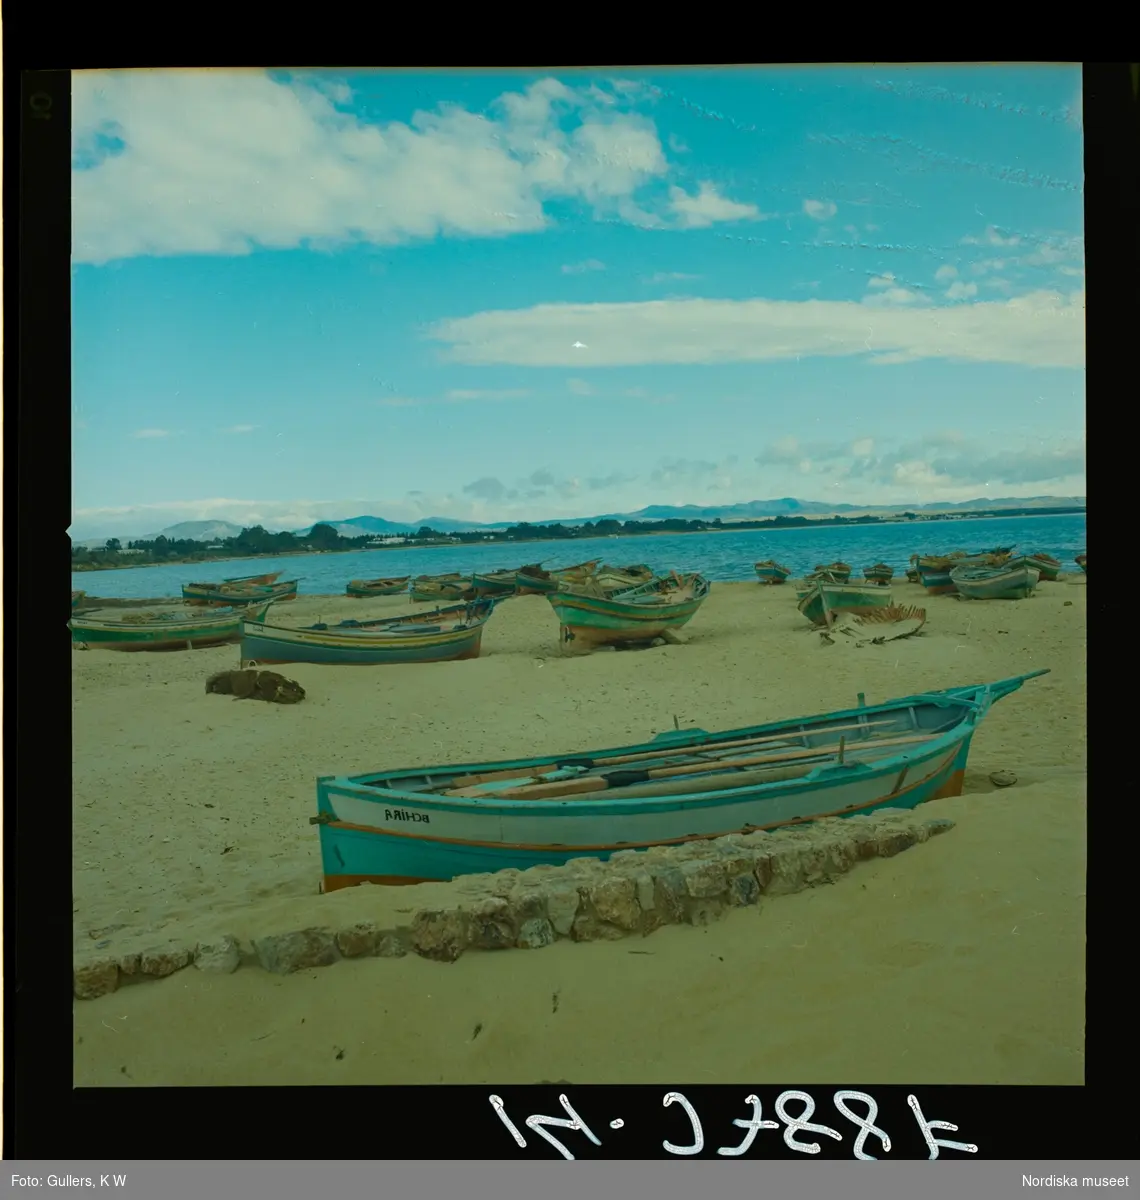 2791 Tunisien Kartago. Båtar på strand.